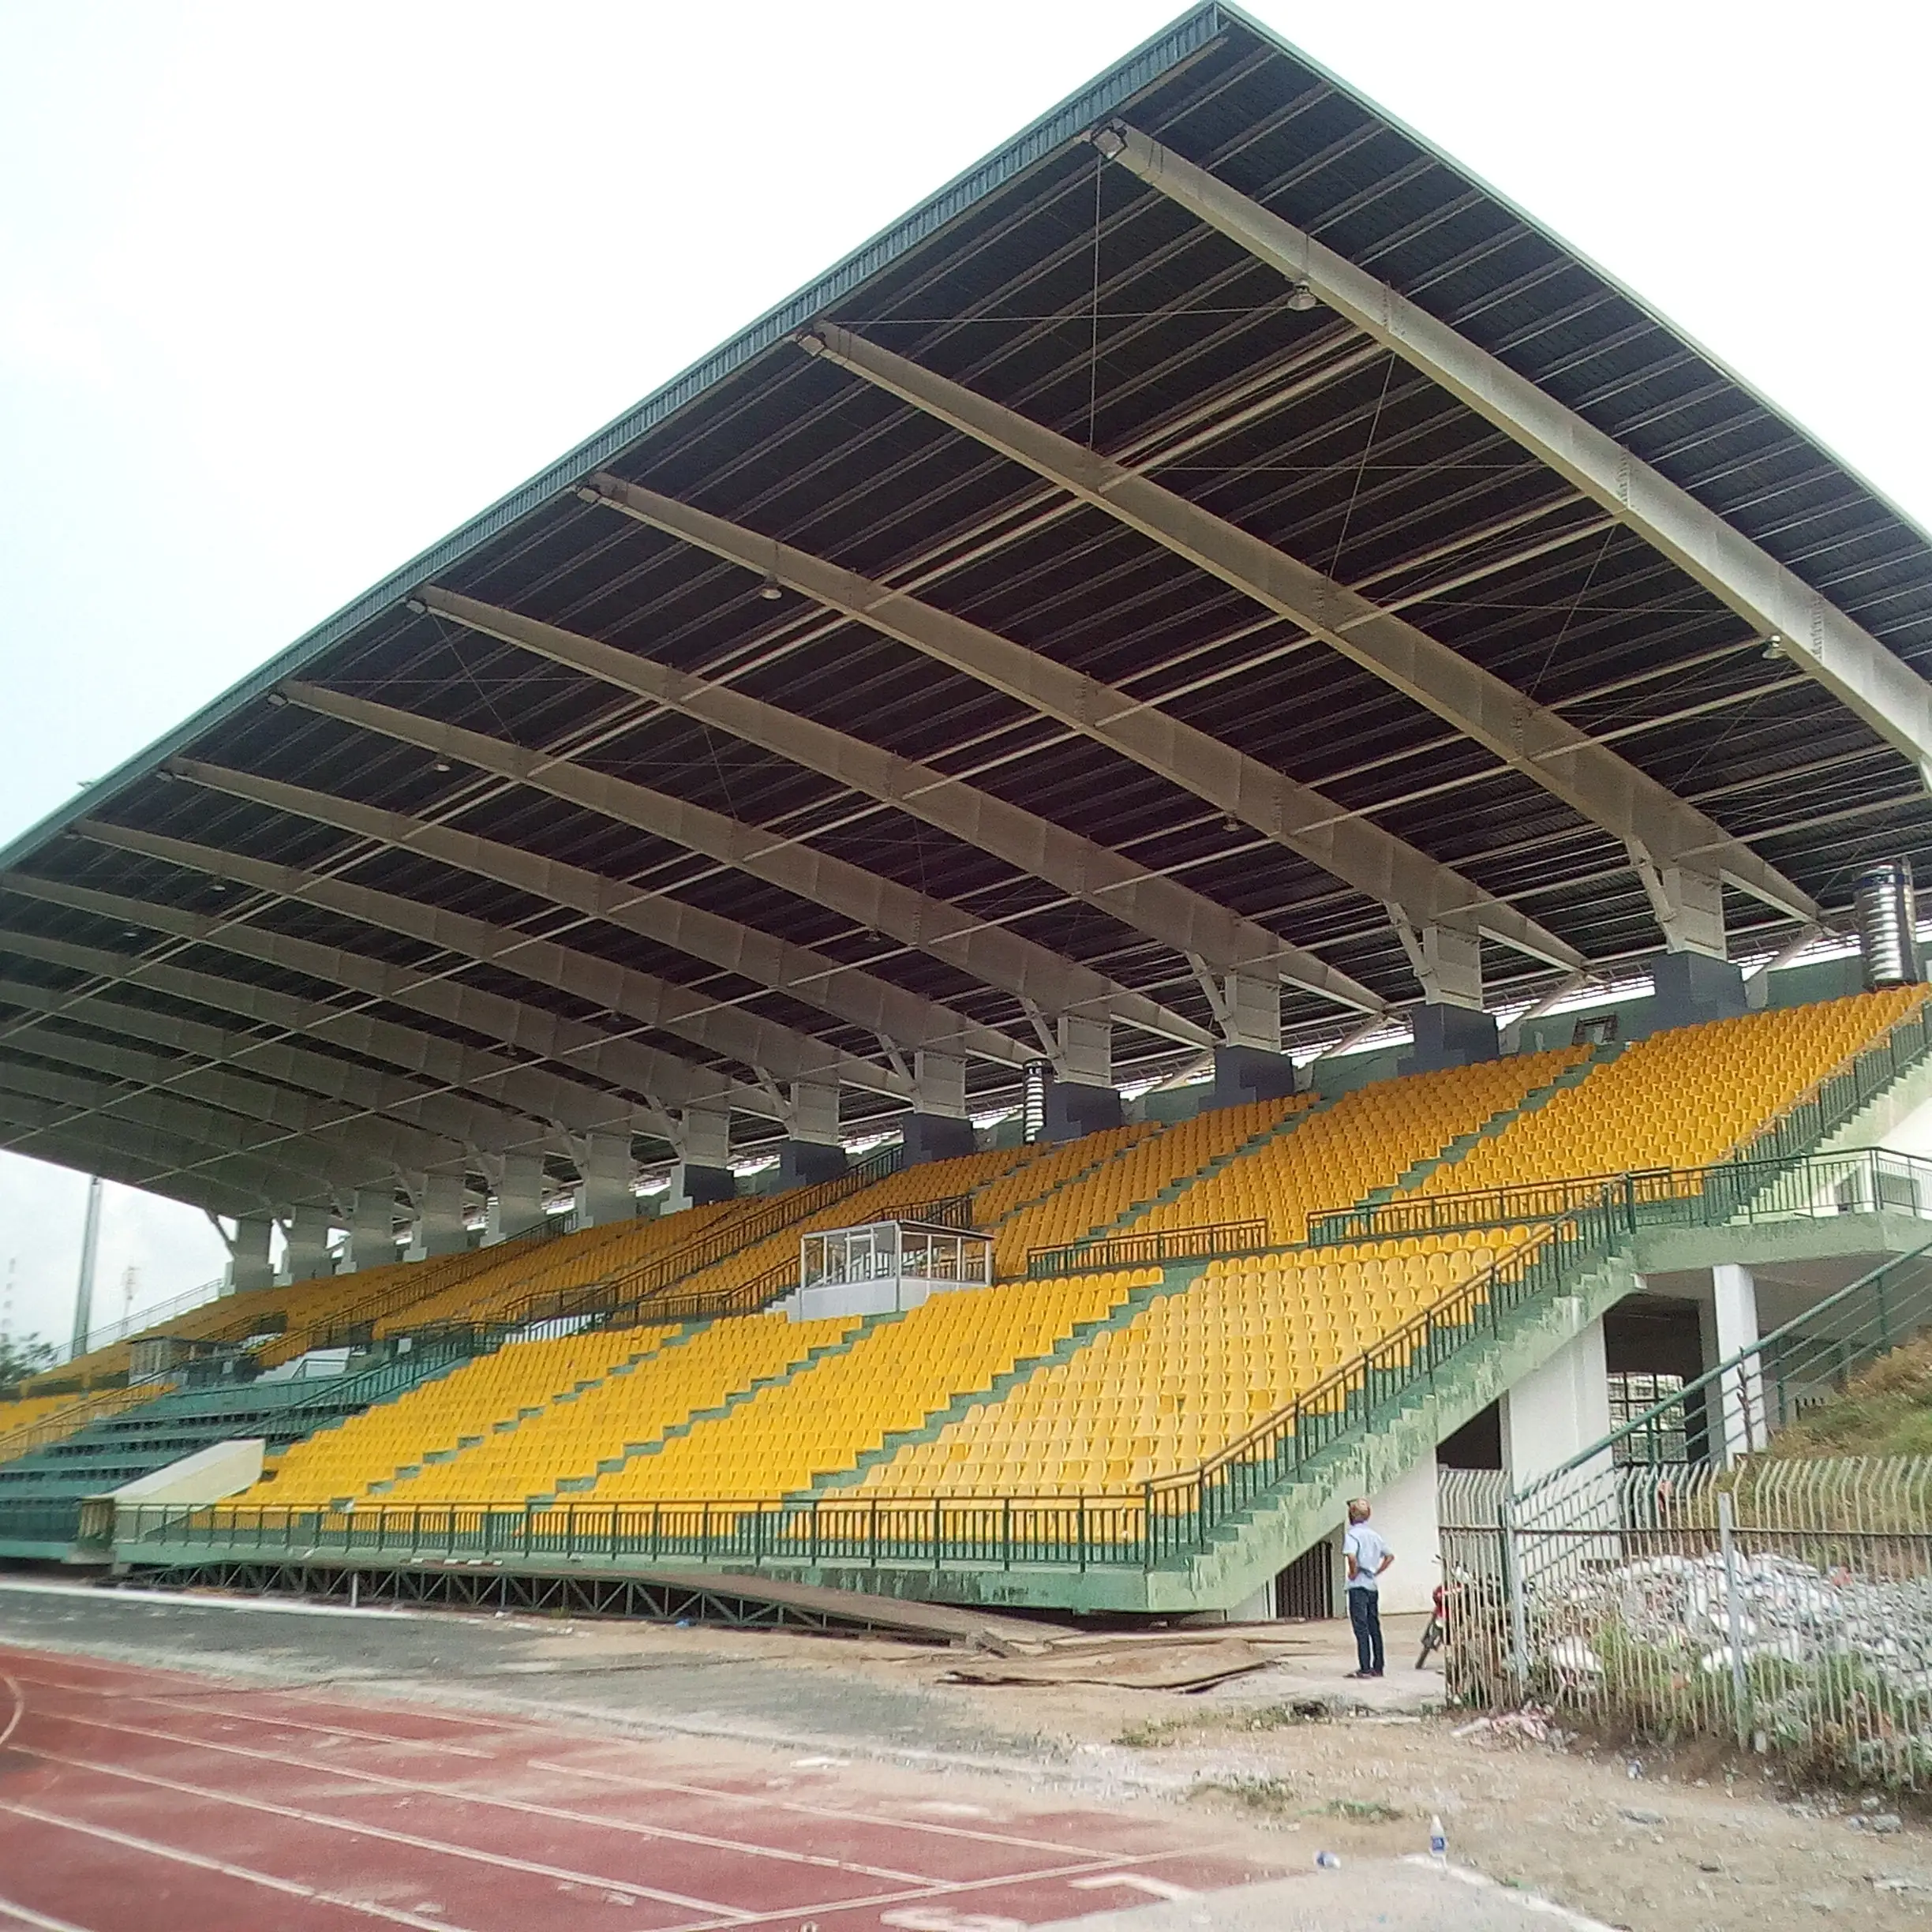 Modernes Design Stahl konstruktion rahmen in Äthiopien Africa Area Warehouse Stahl konstruktion für Sportstadion